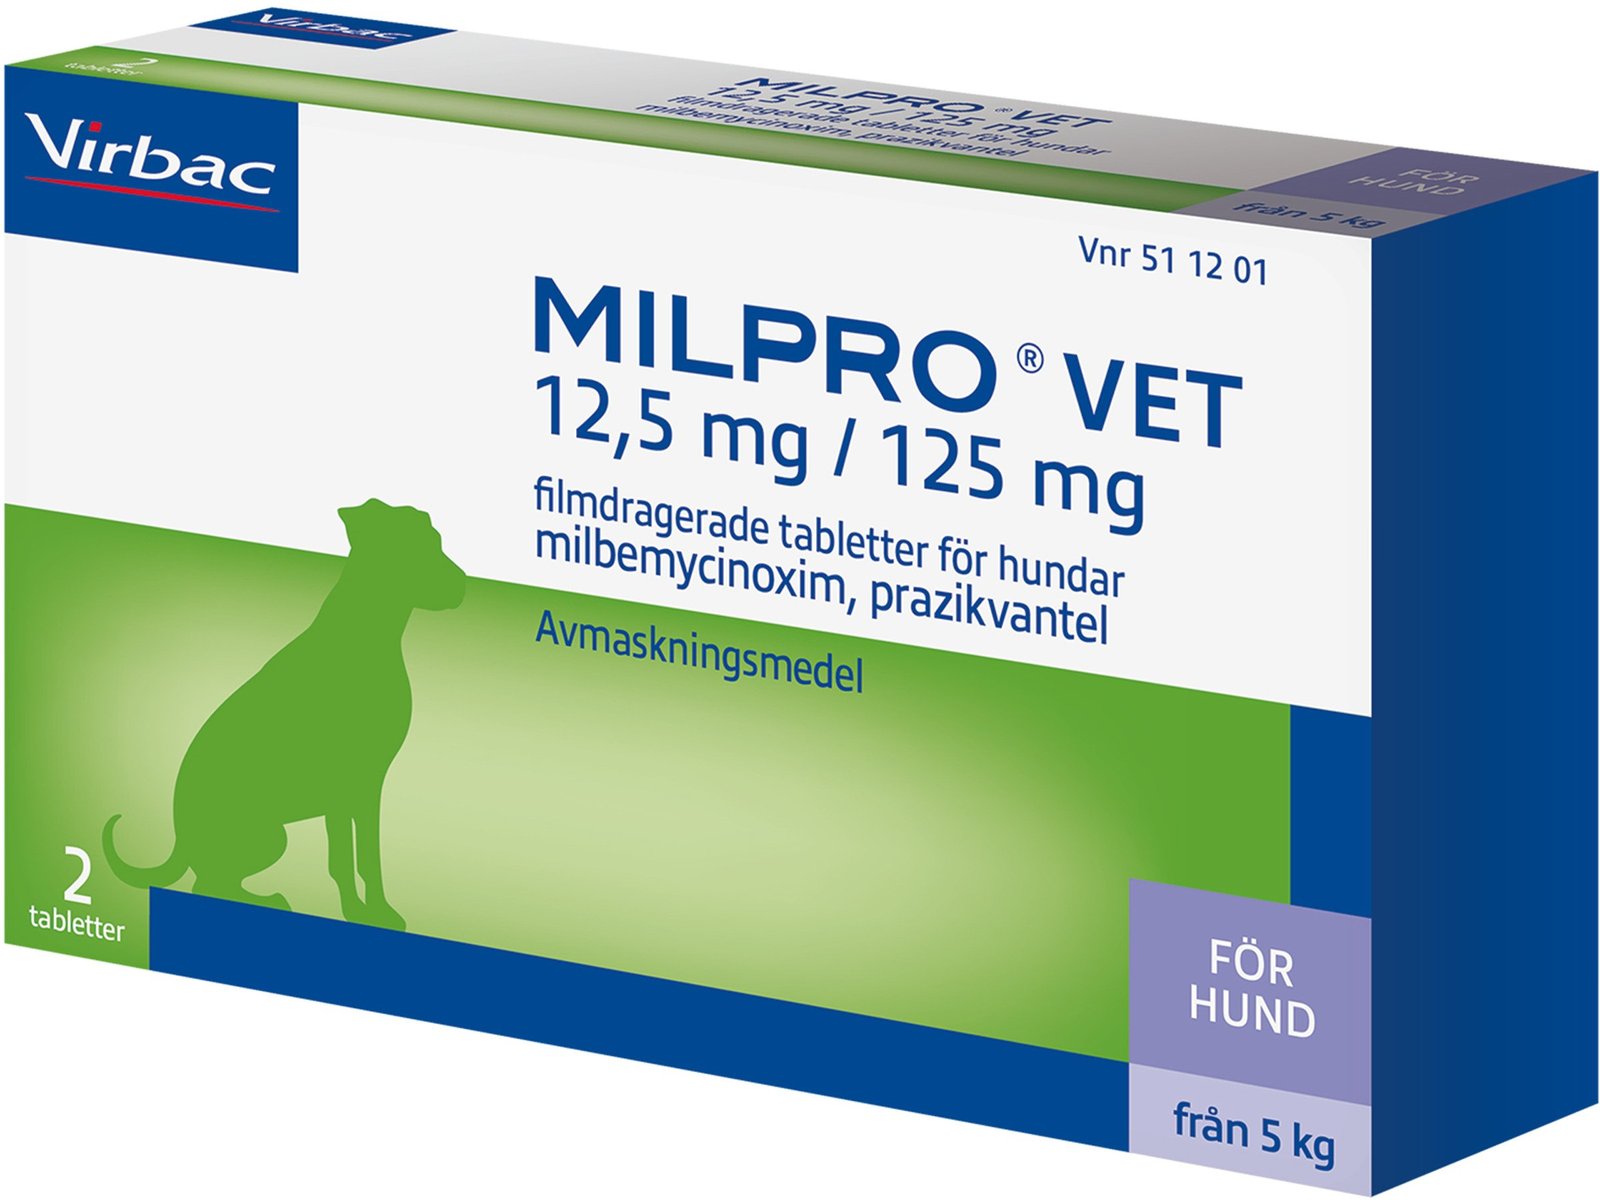 Virbac Milpro Vet 12,5 mg/125 mg Avmaskningsmedel för hundar 2 tabletter